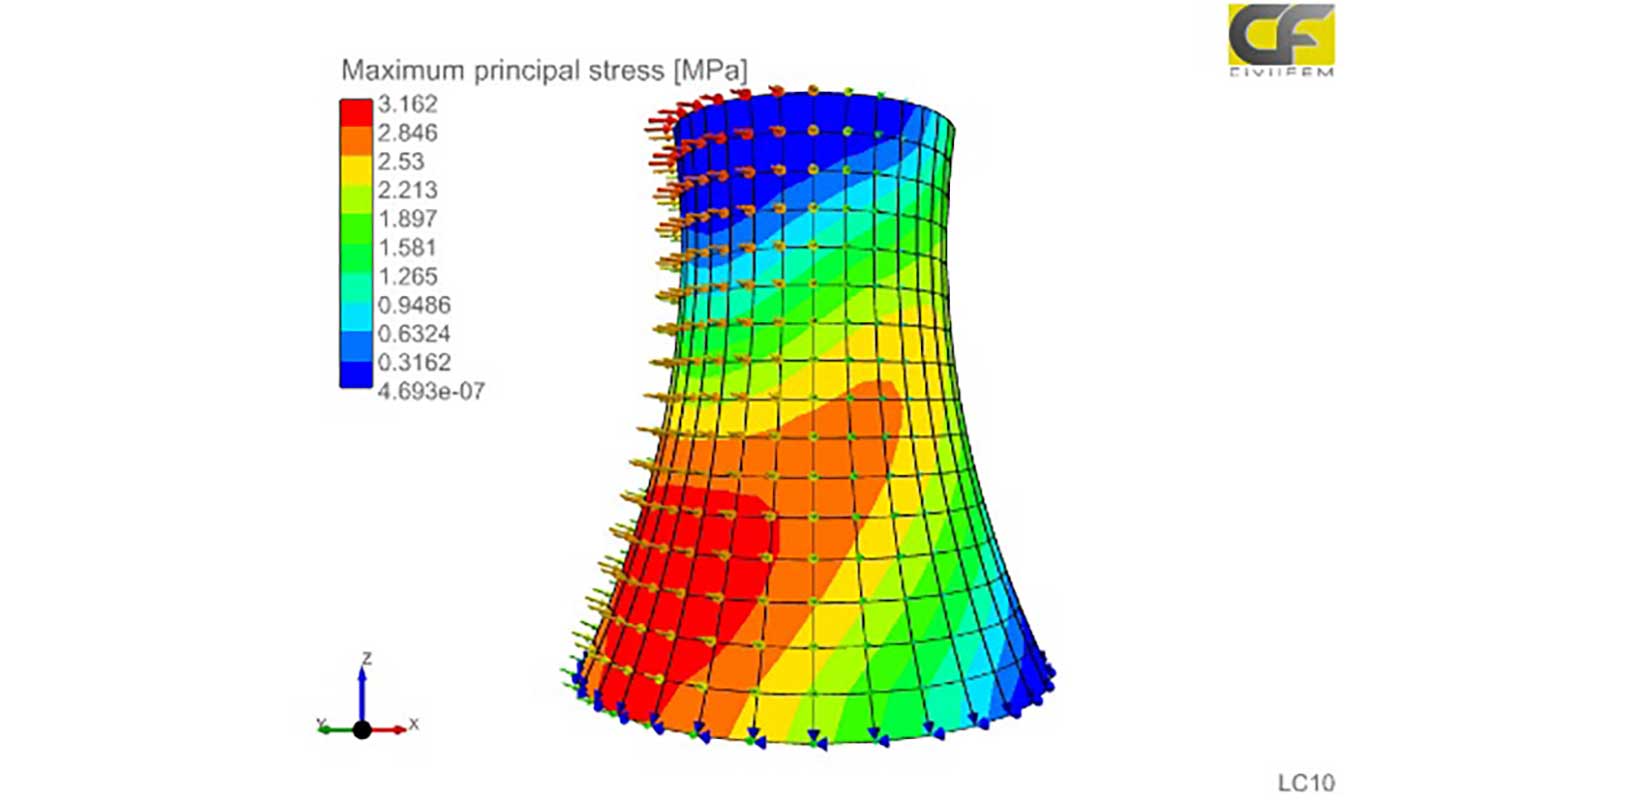 Simulation multiphysique pour l’analyse structurelle de centrales nucléaires utilisant CivilFEM, alimentée par Marc